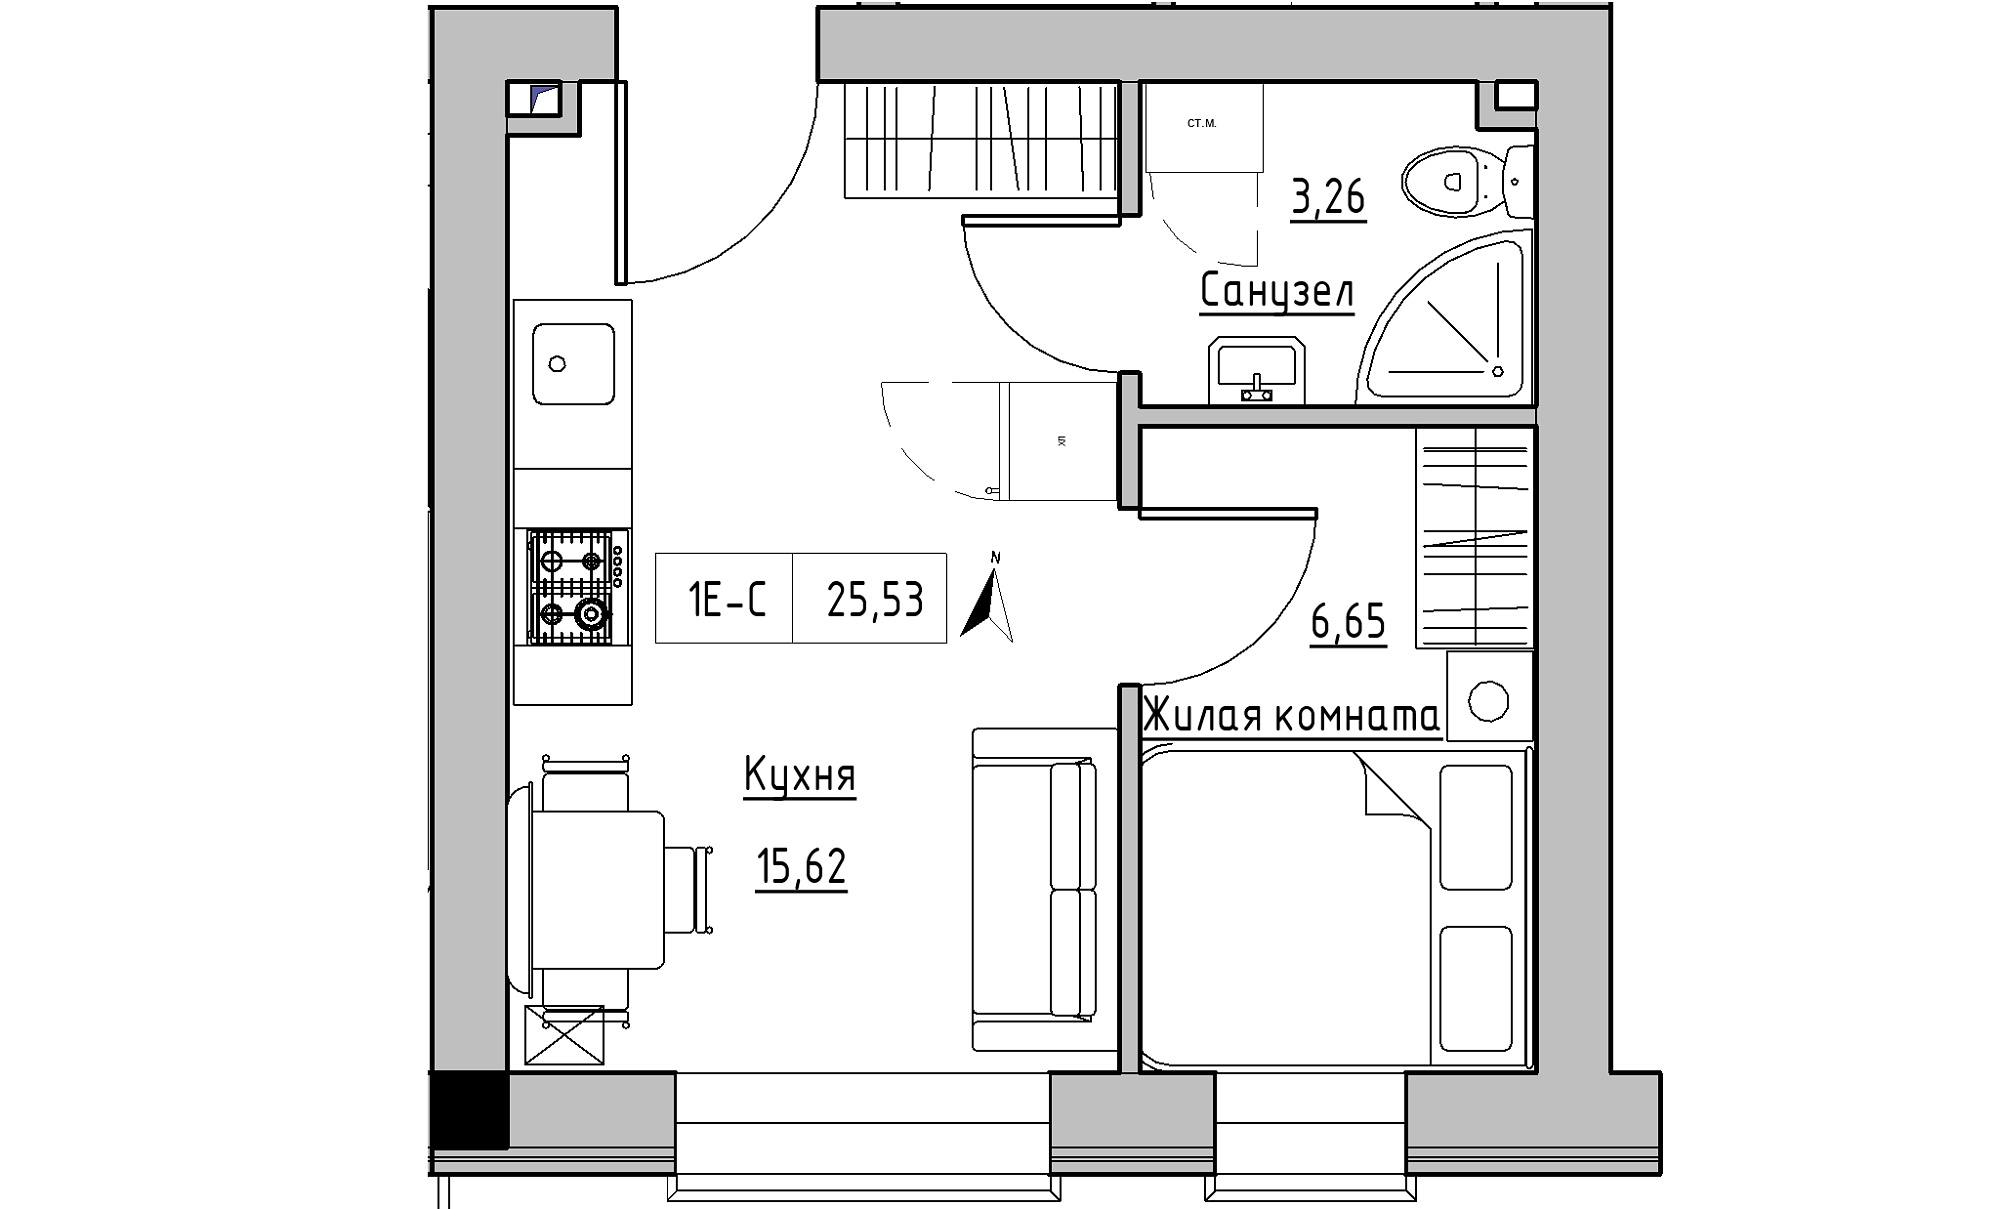 Планировка 1-к квартира площей 25.53м2, KS-016-04/0004.